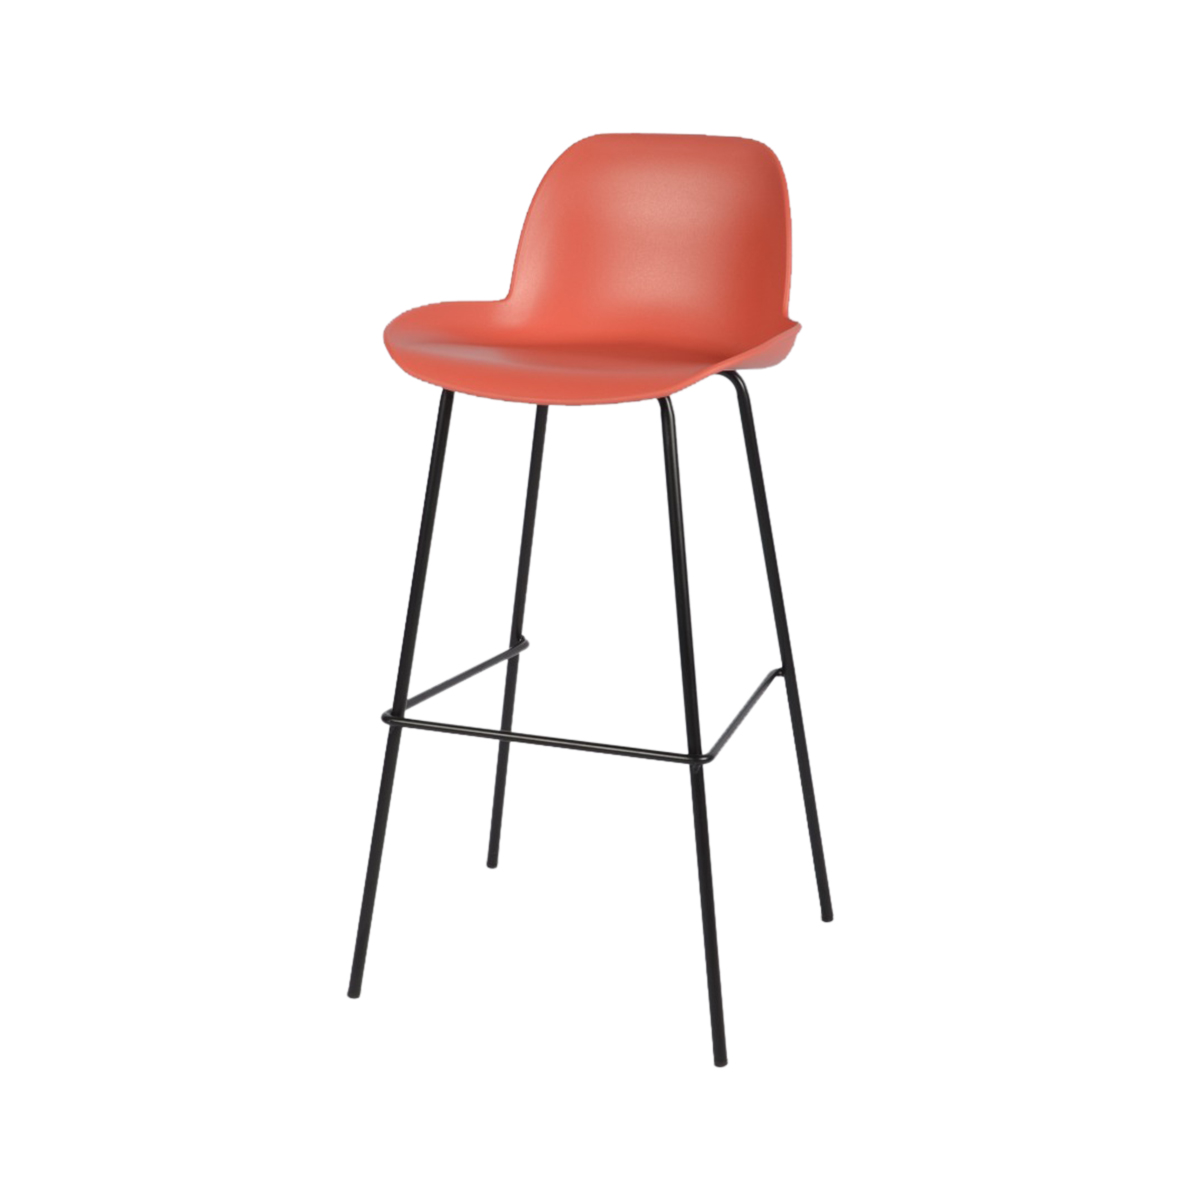 كرسي مرتفع فايبر متميز باللون البرتقالي